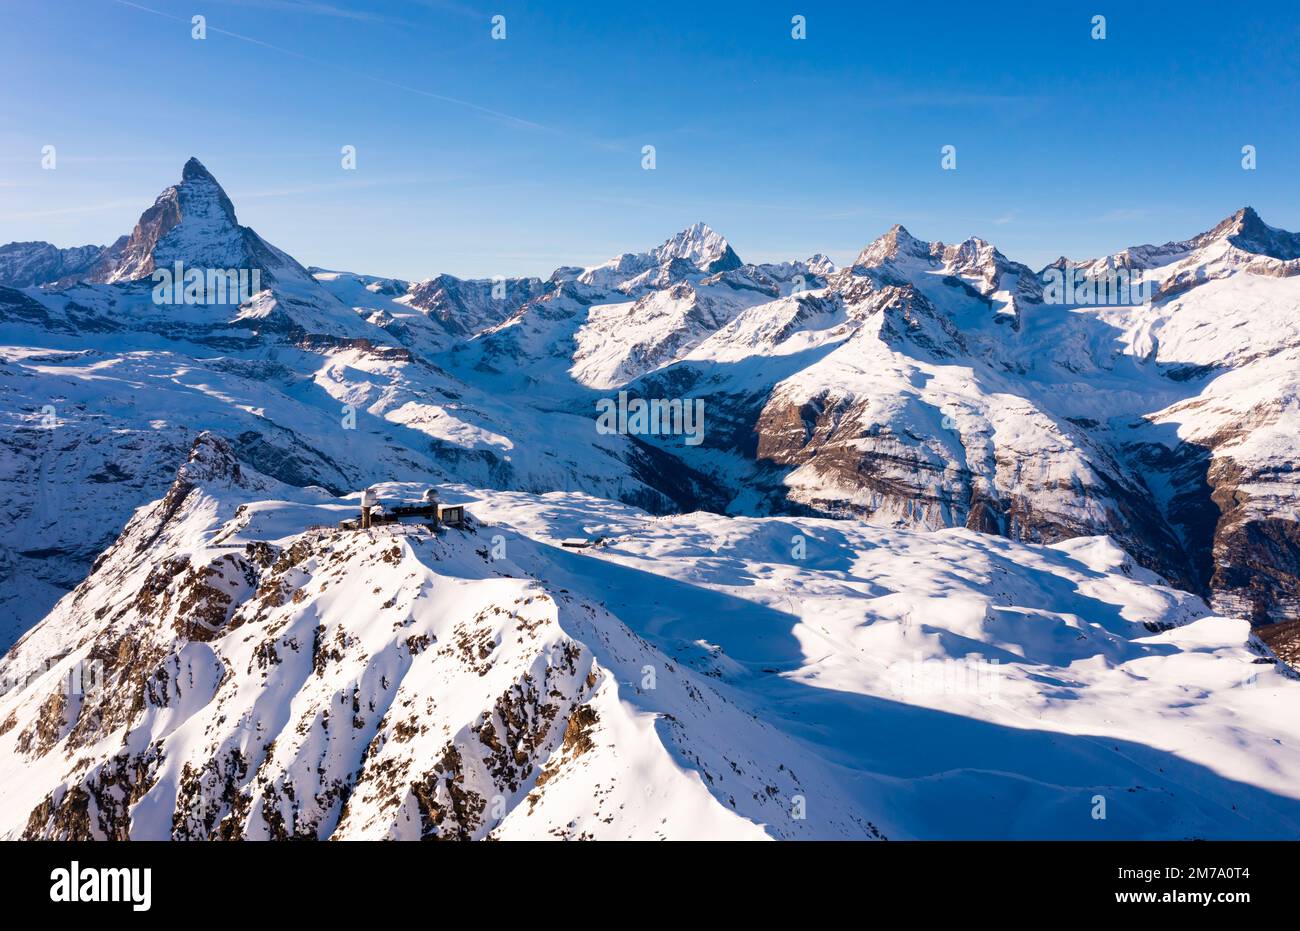 Mountain ridge Gornergrat with observatory on background of Matterhorn peak, Switzerland Stock Photo